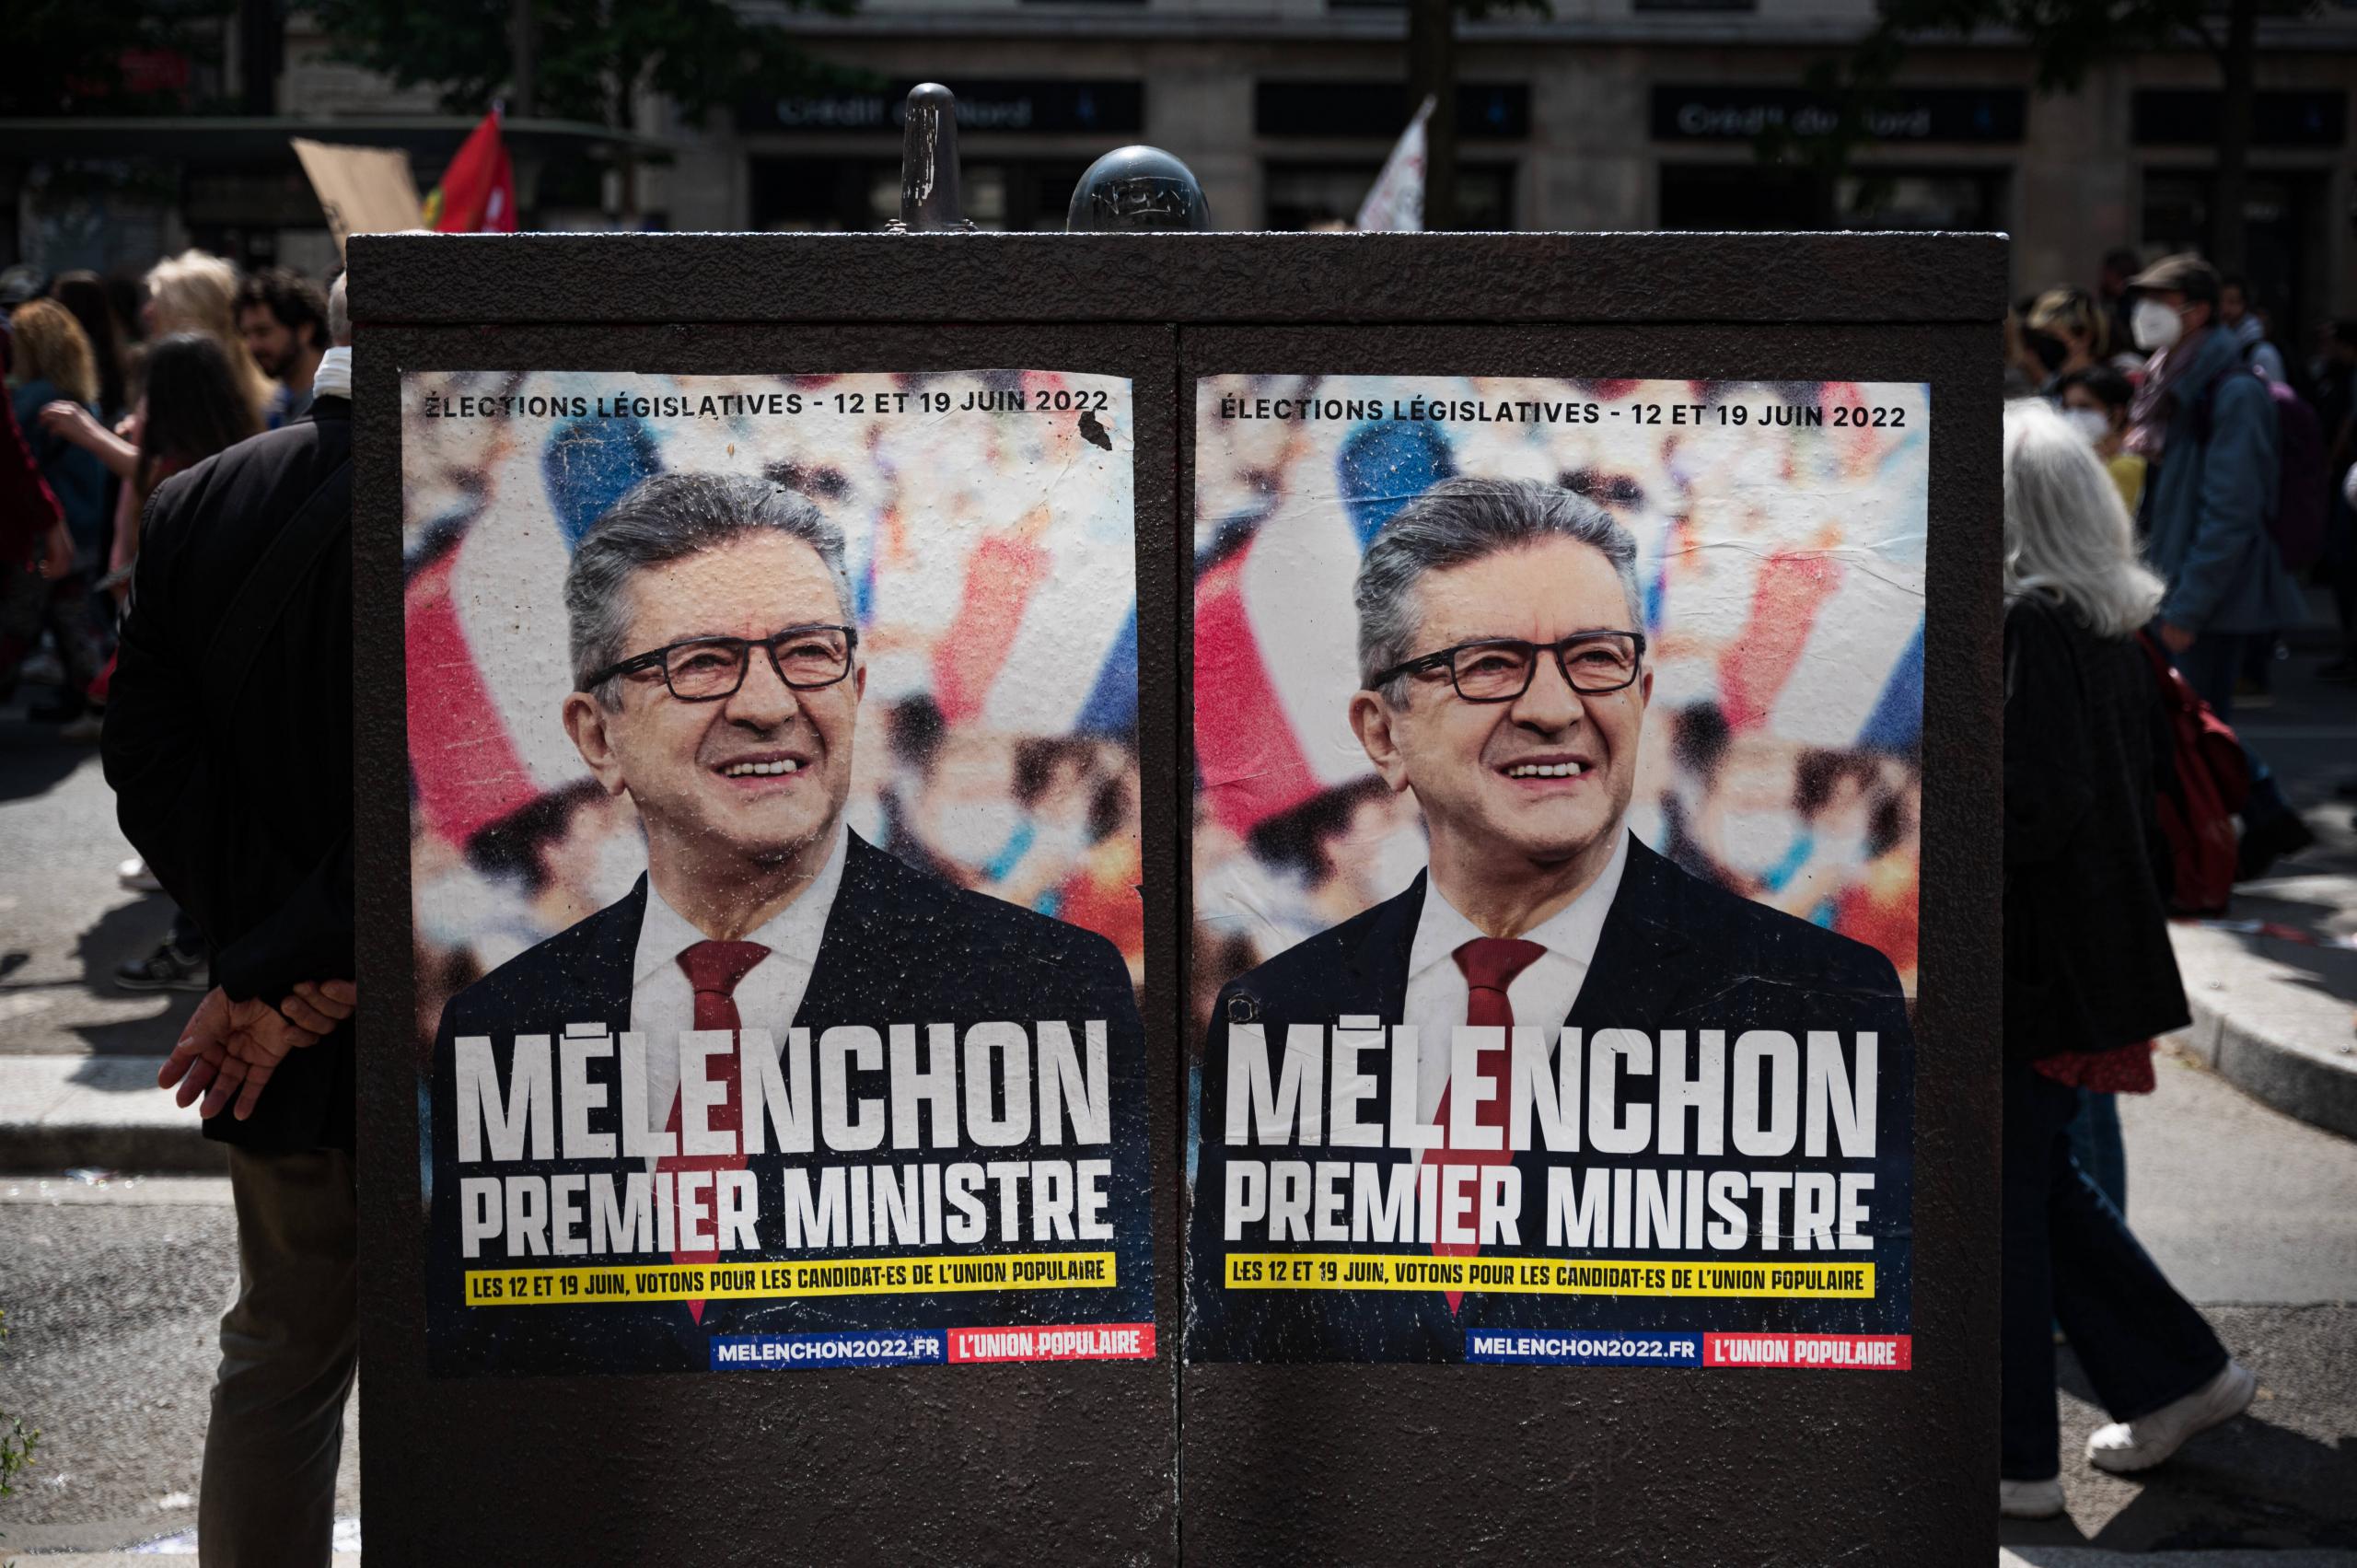 Wahlkampfposter für die bevorstehende Parlamentswahl im Juni 2022.